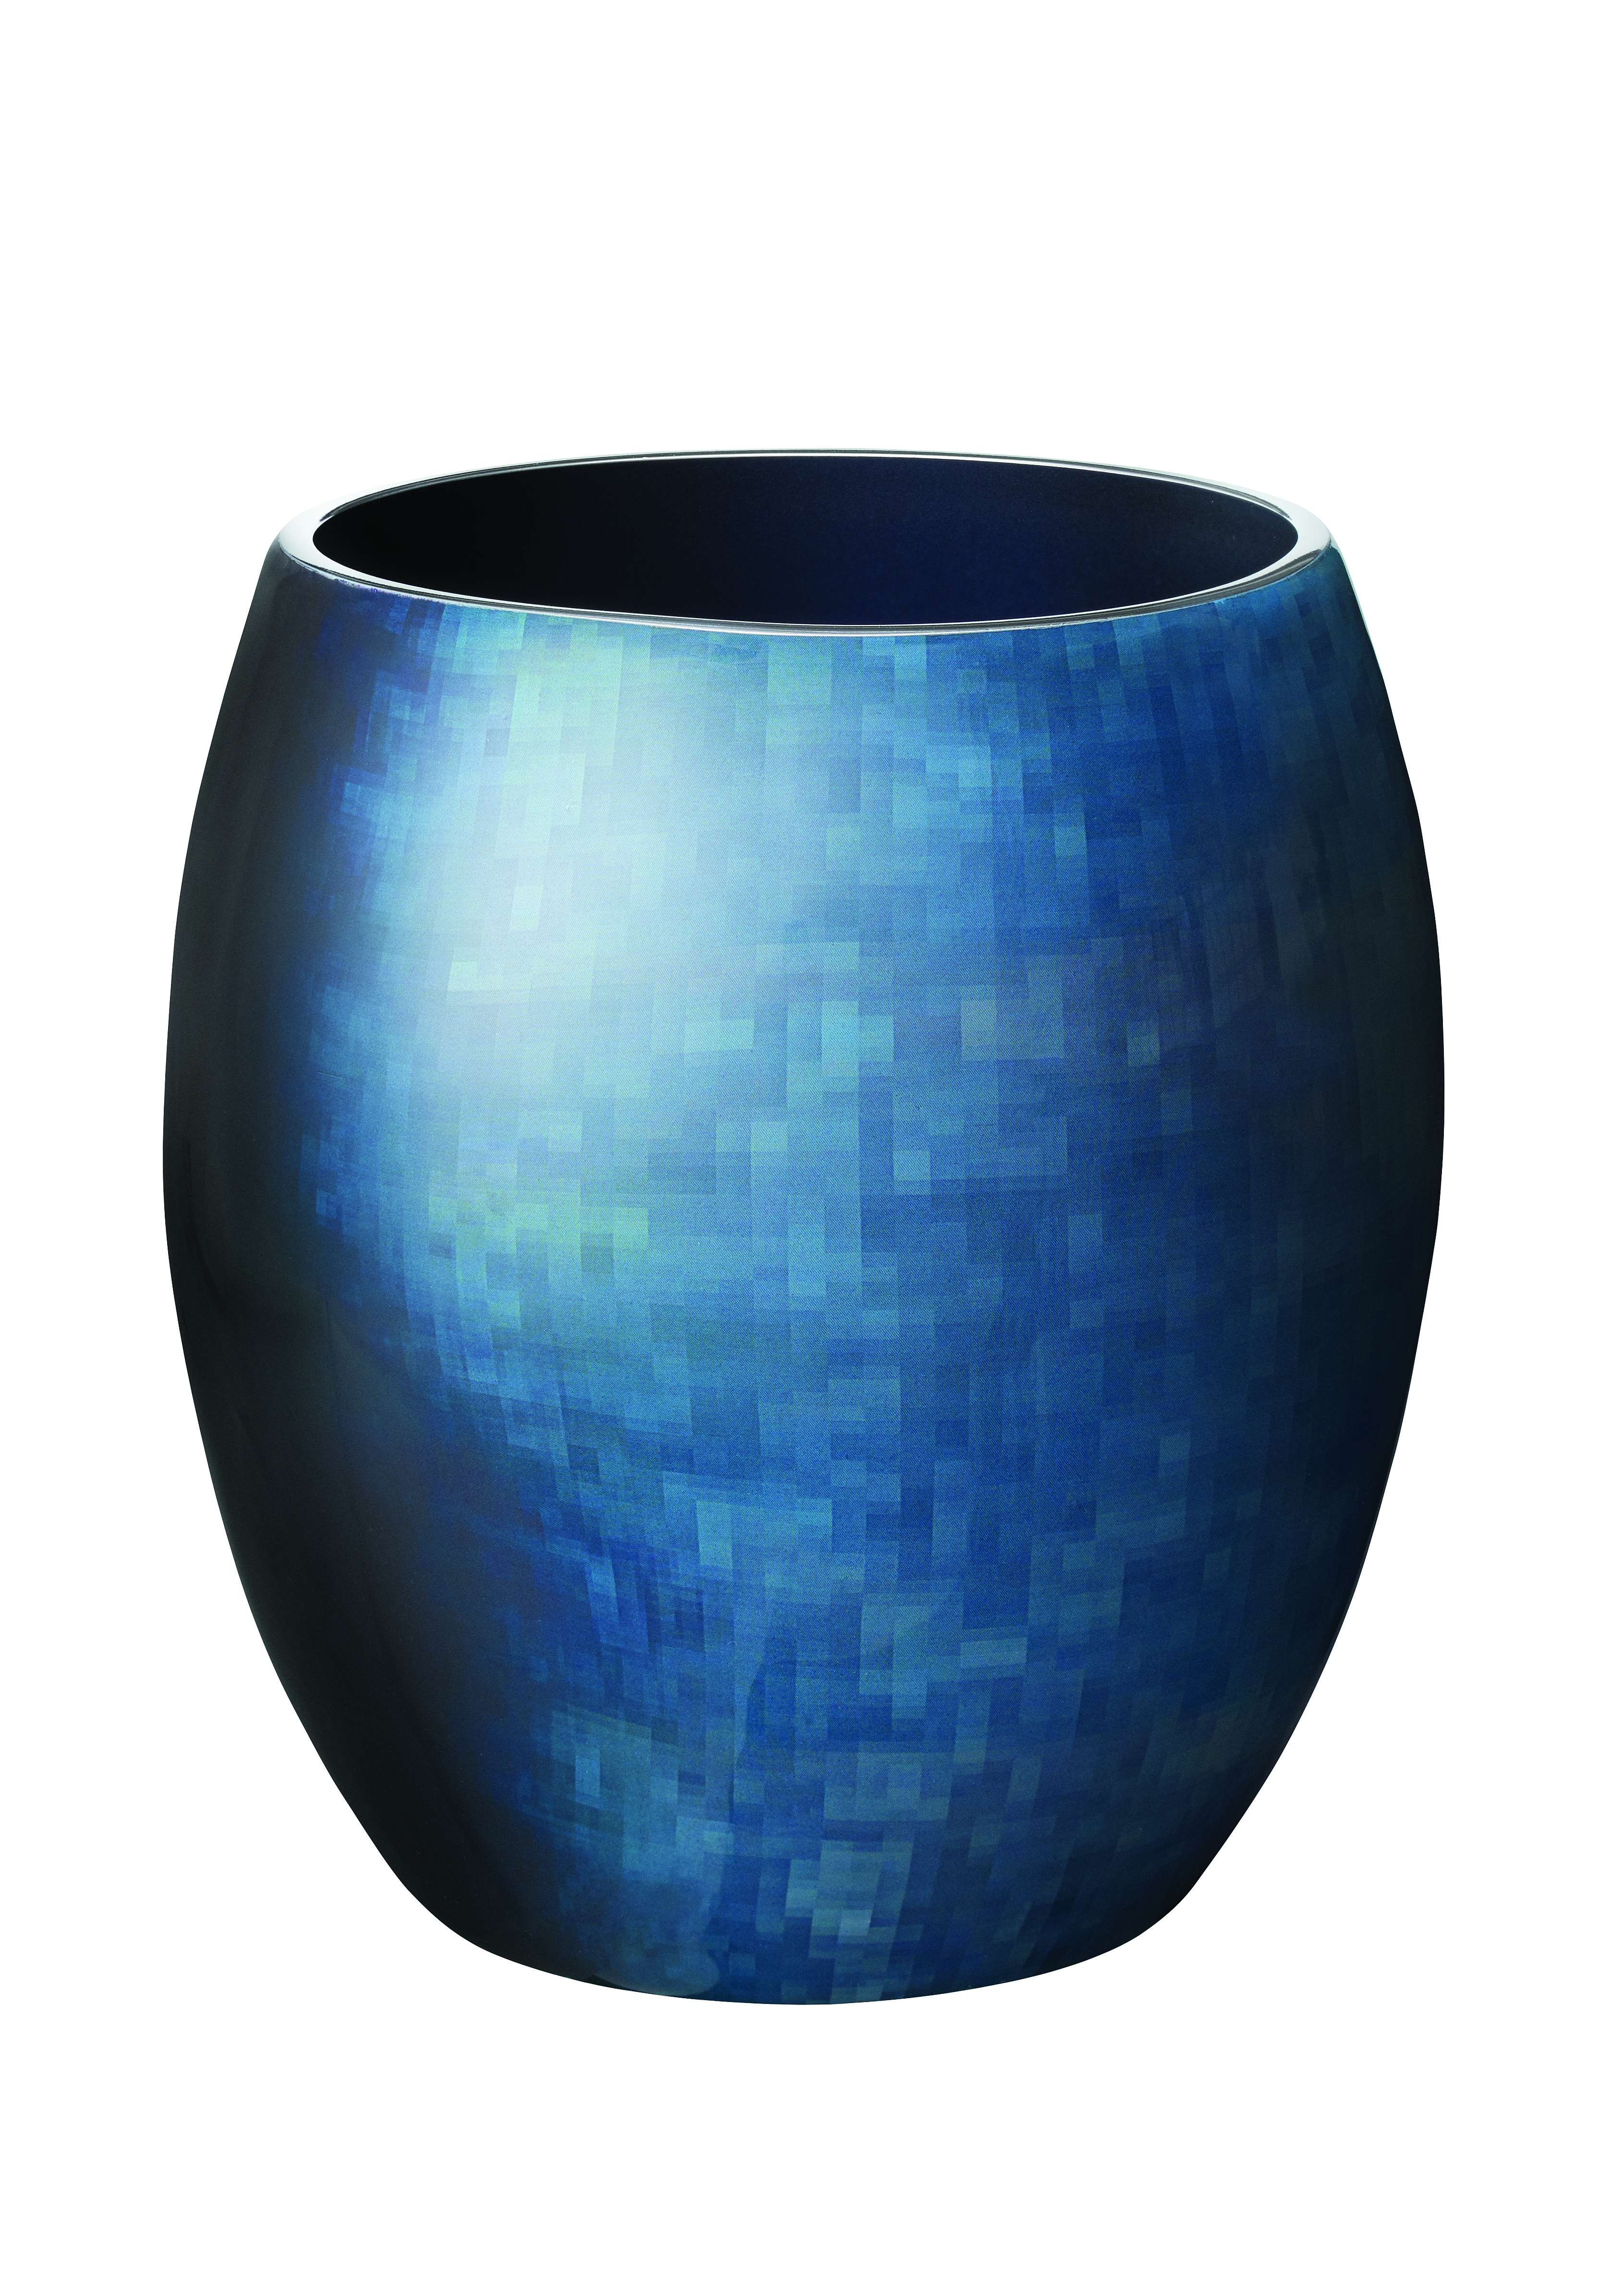 Stelton - Stockholm Horizon Vase - Small (451-20)